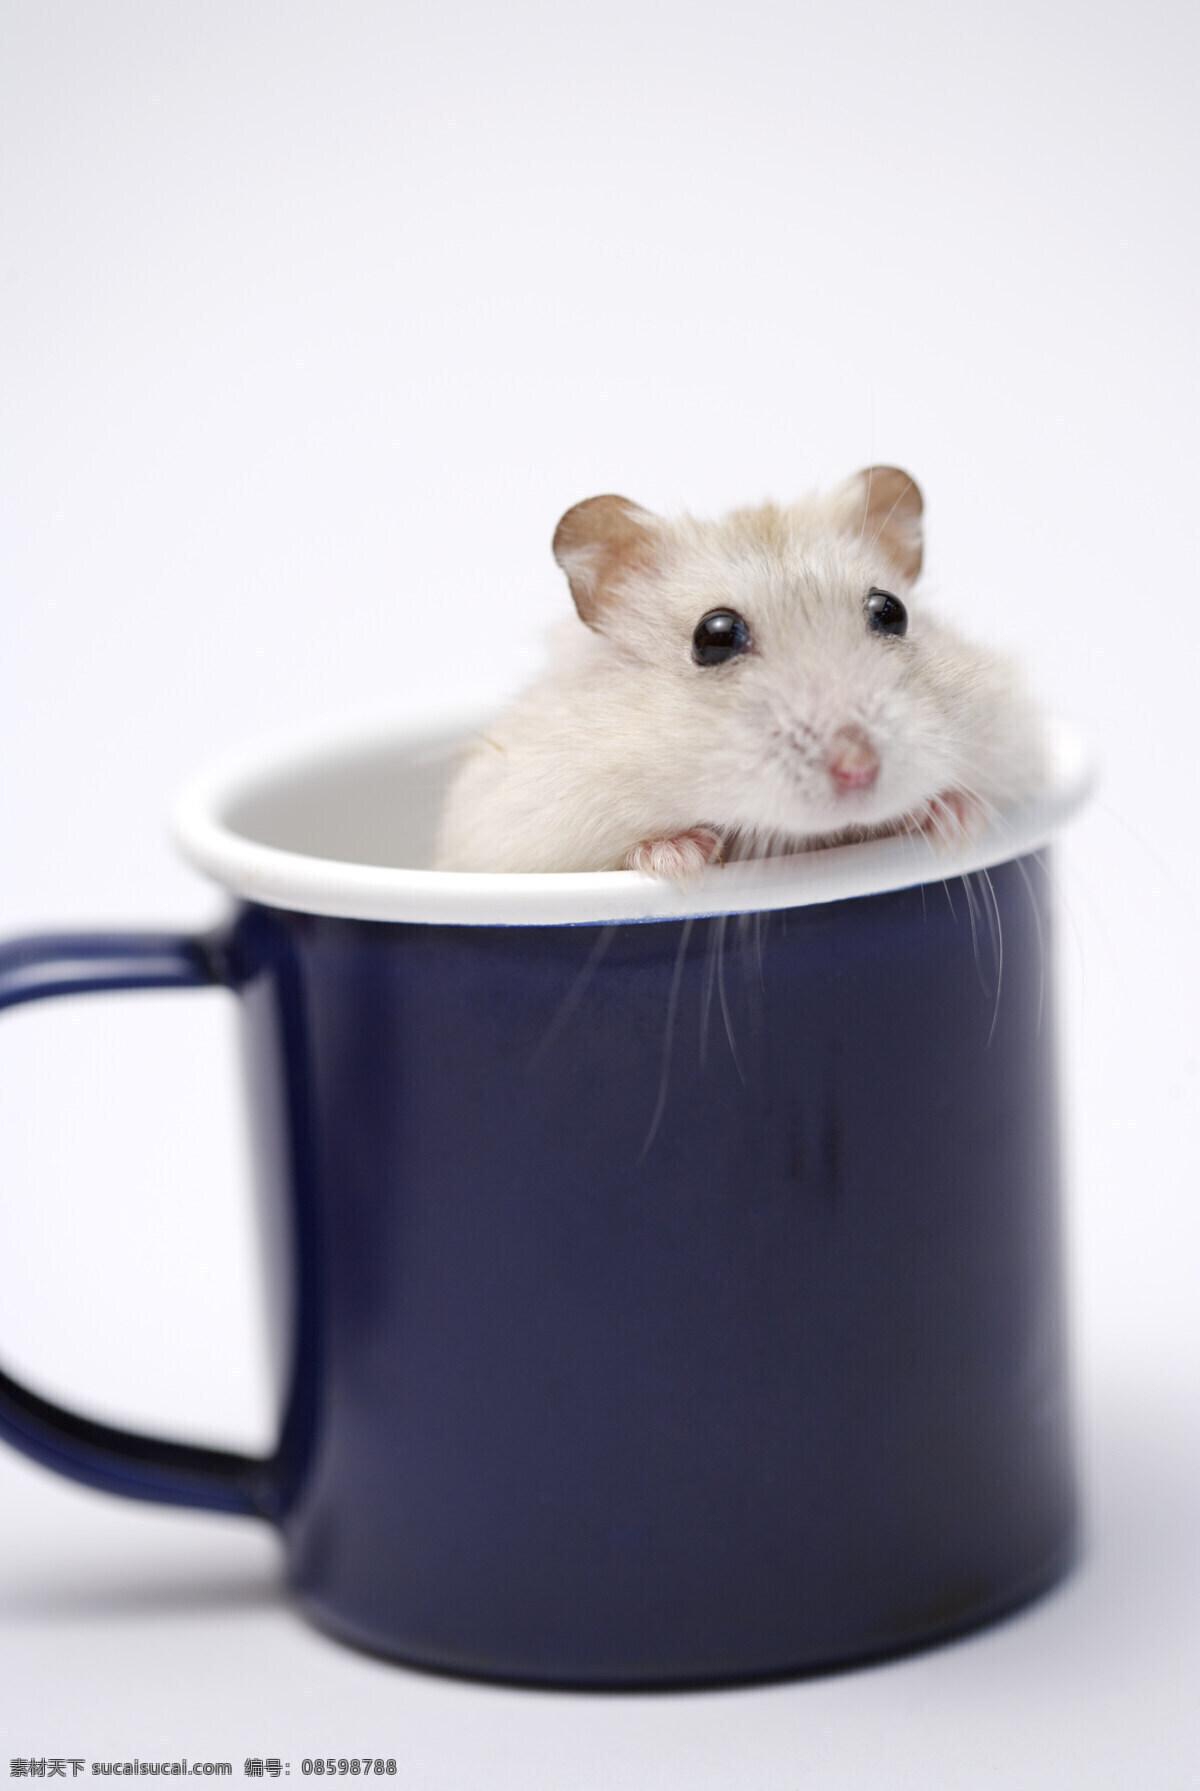 小白 鼠 家禽家畜 老鼠 生物世界 小白鼠 杯子里的老鼠 矢量图 日常生活